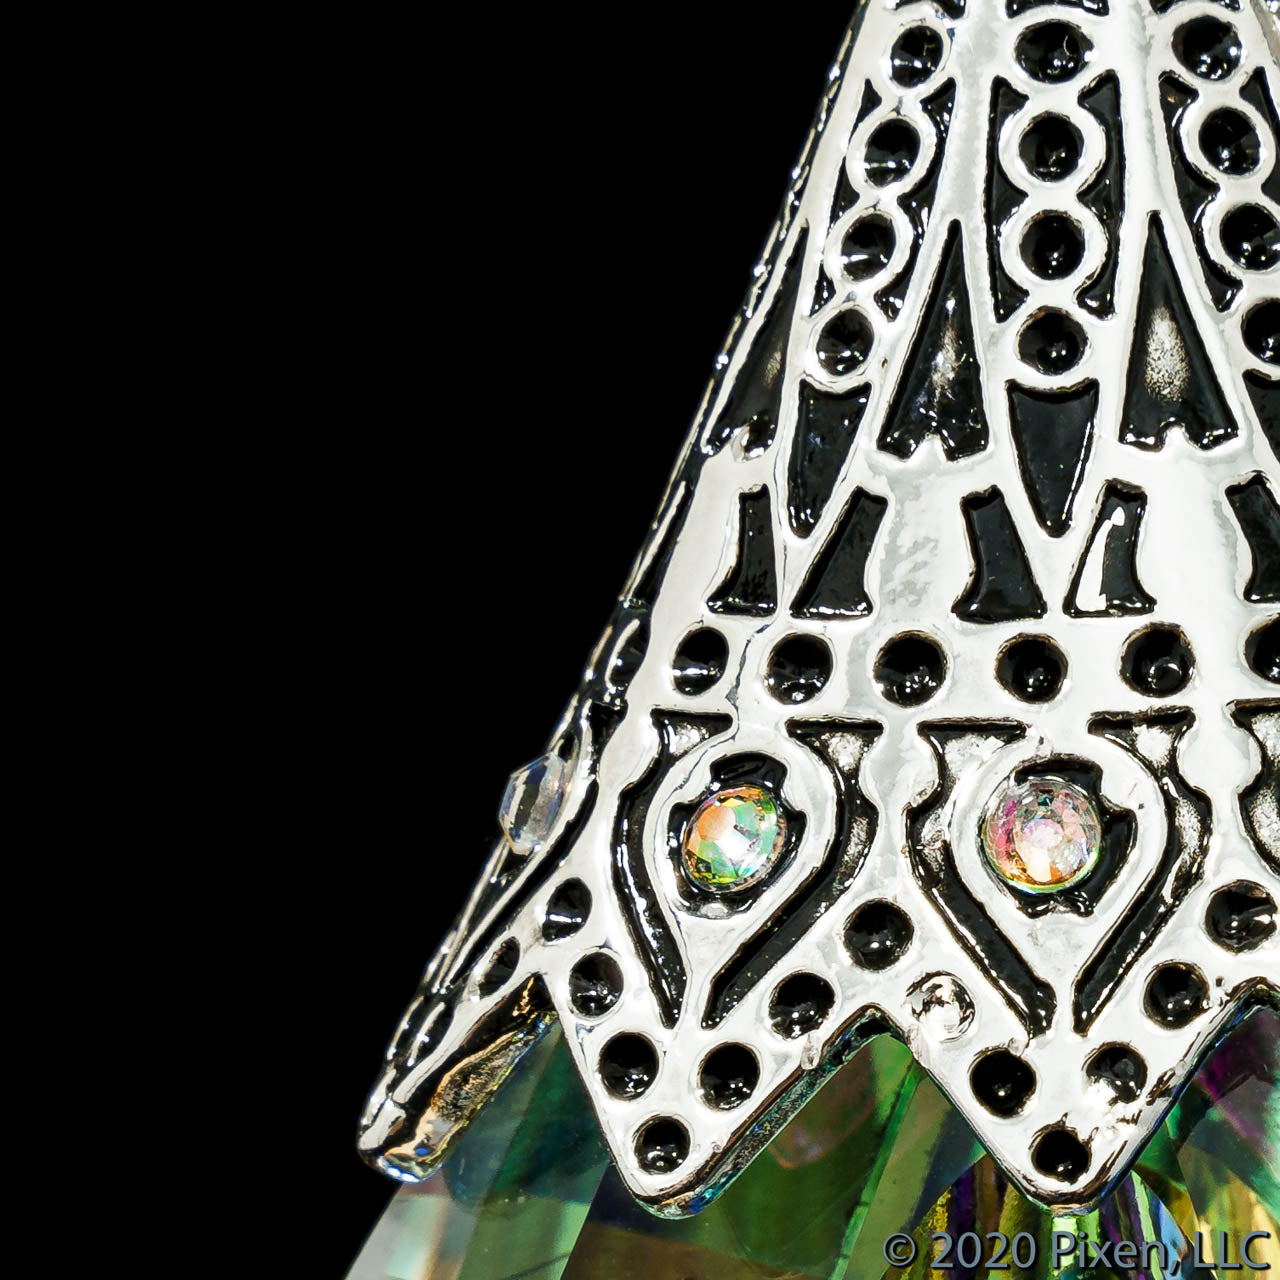 Kyle Krystal, a crystal ornament by Pixen